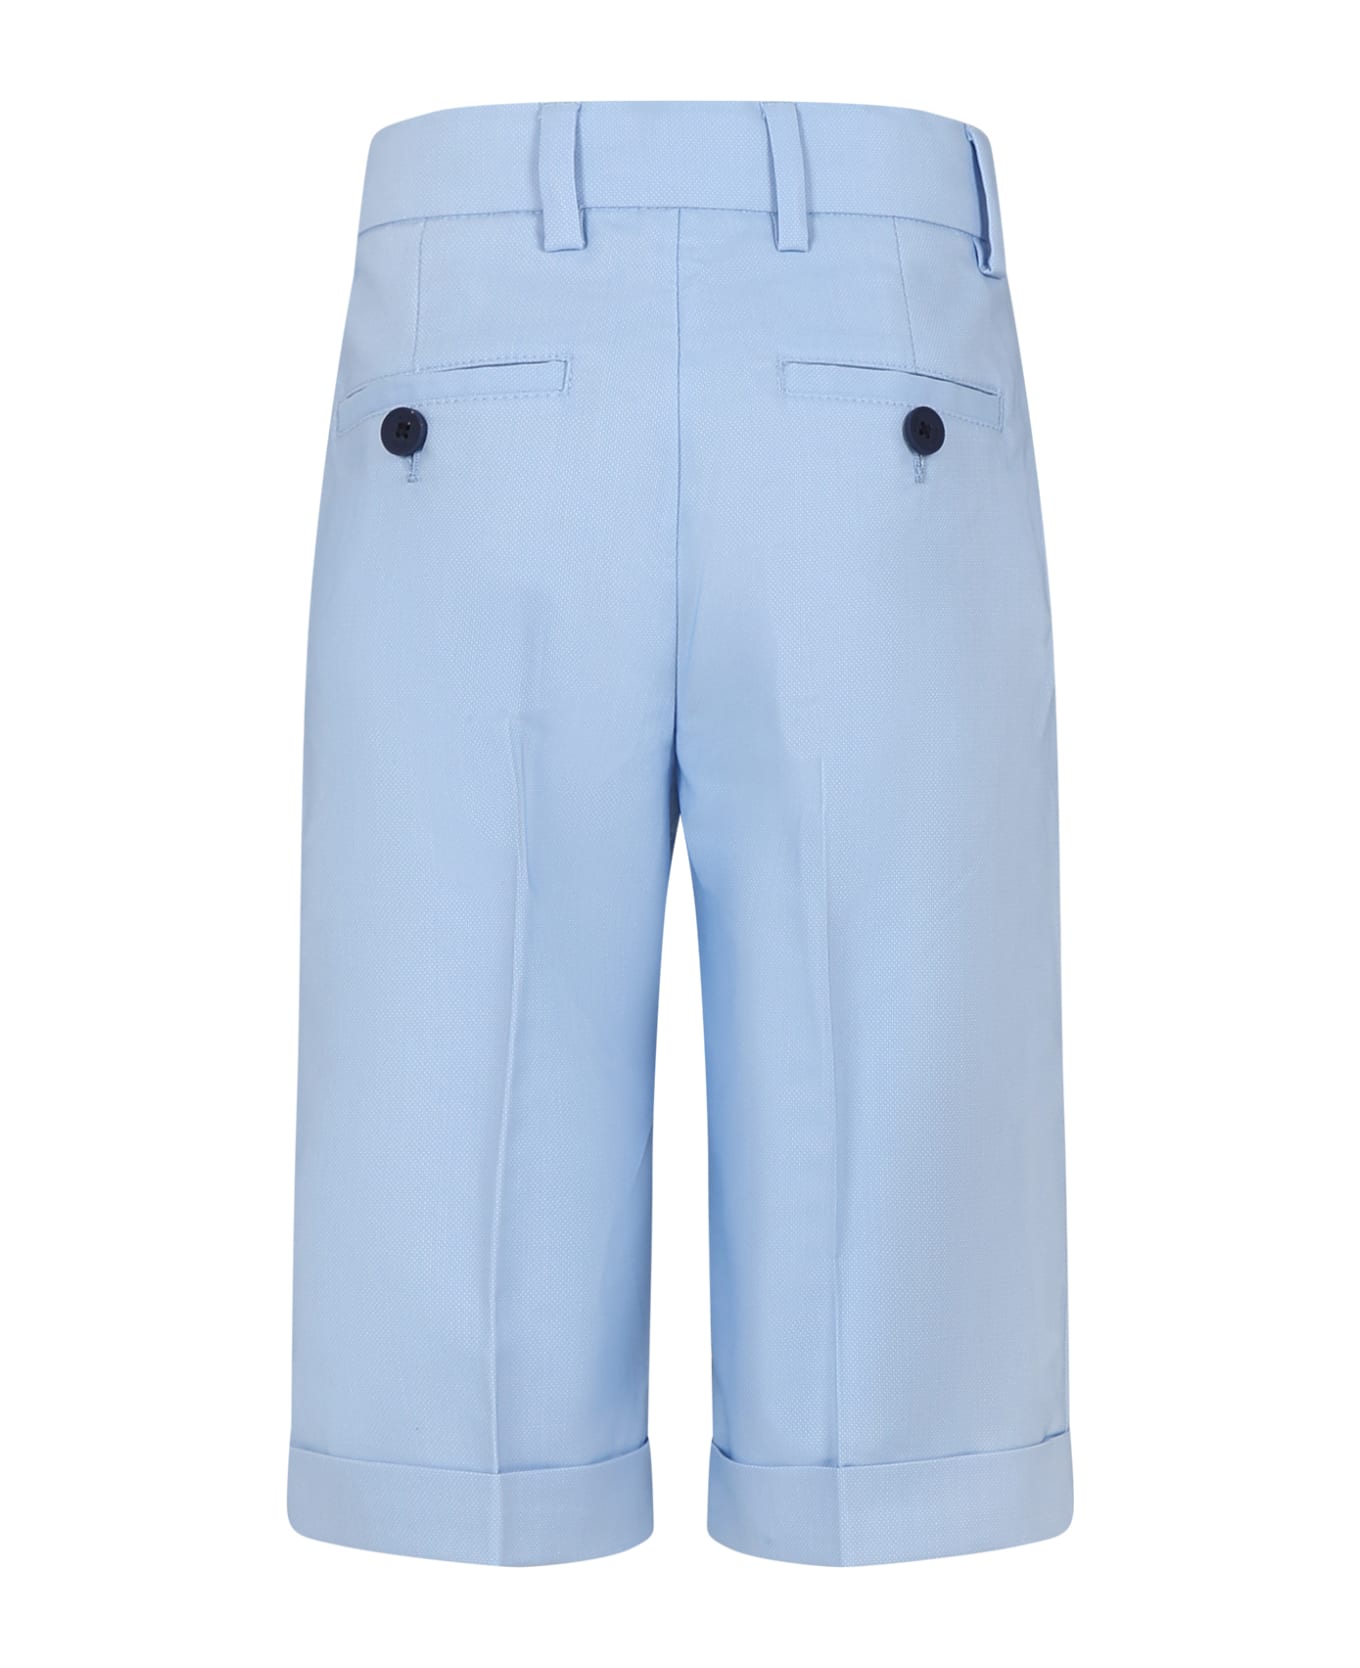 Hugo Boss Elegant Sky Blue Shorts For Boy - Light Blue